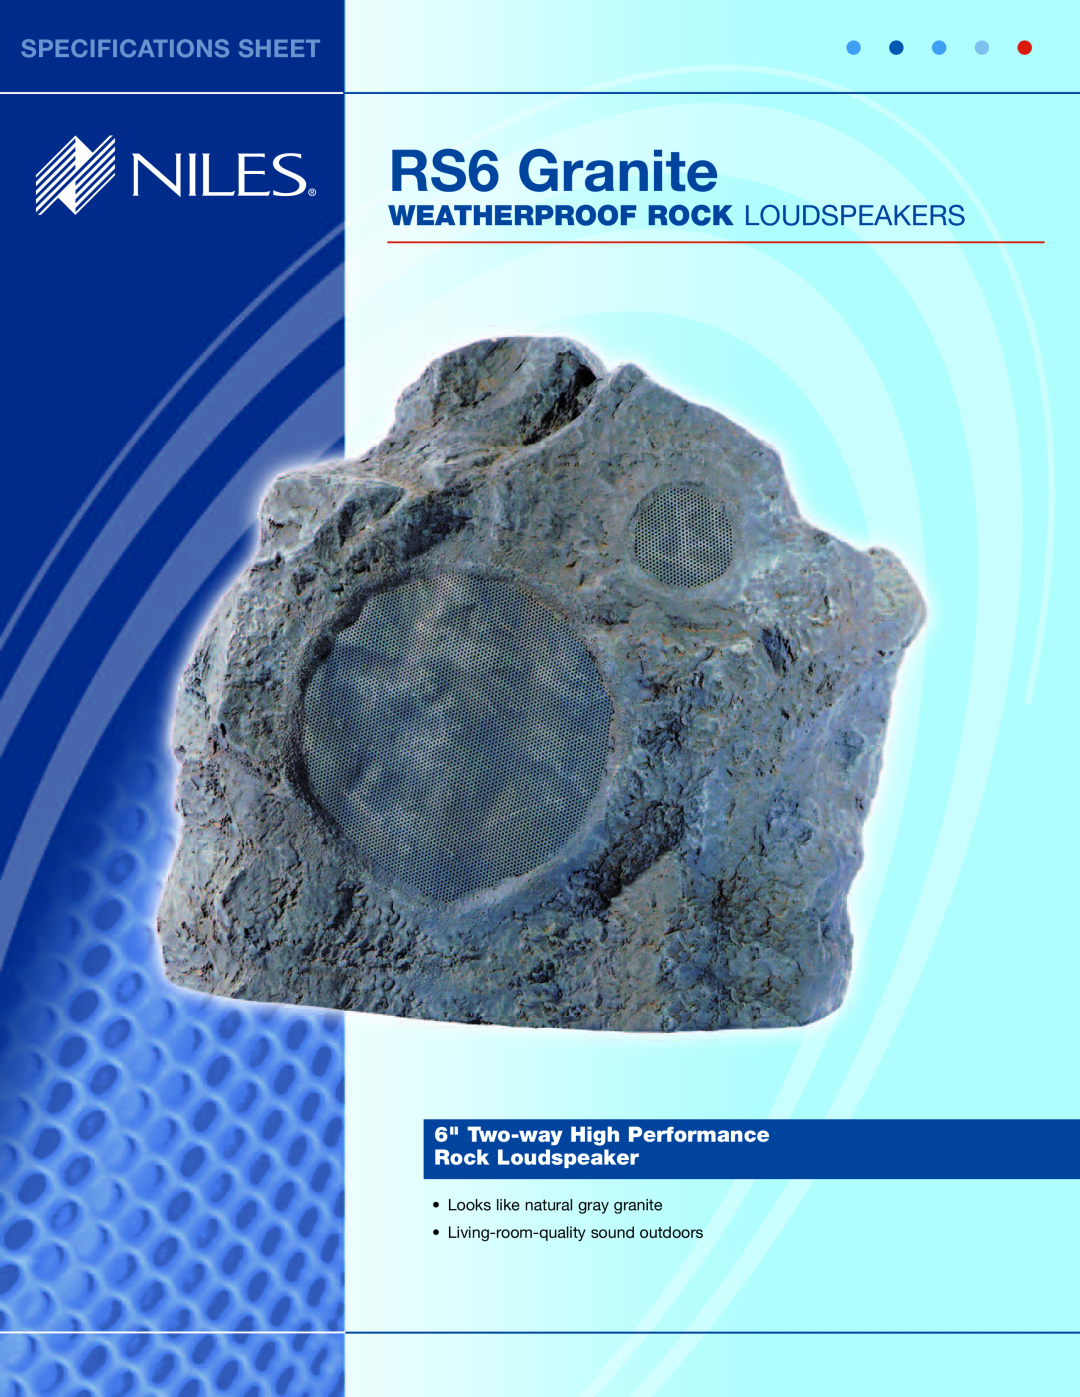 Niles Audio RS6 Granite specifications Weatherproof Rock Loudspeakers, Specifications Sheet 